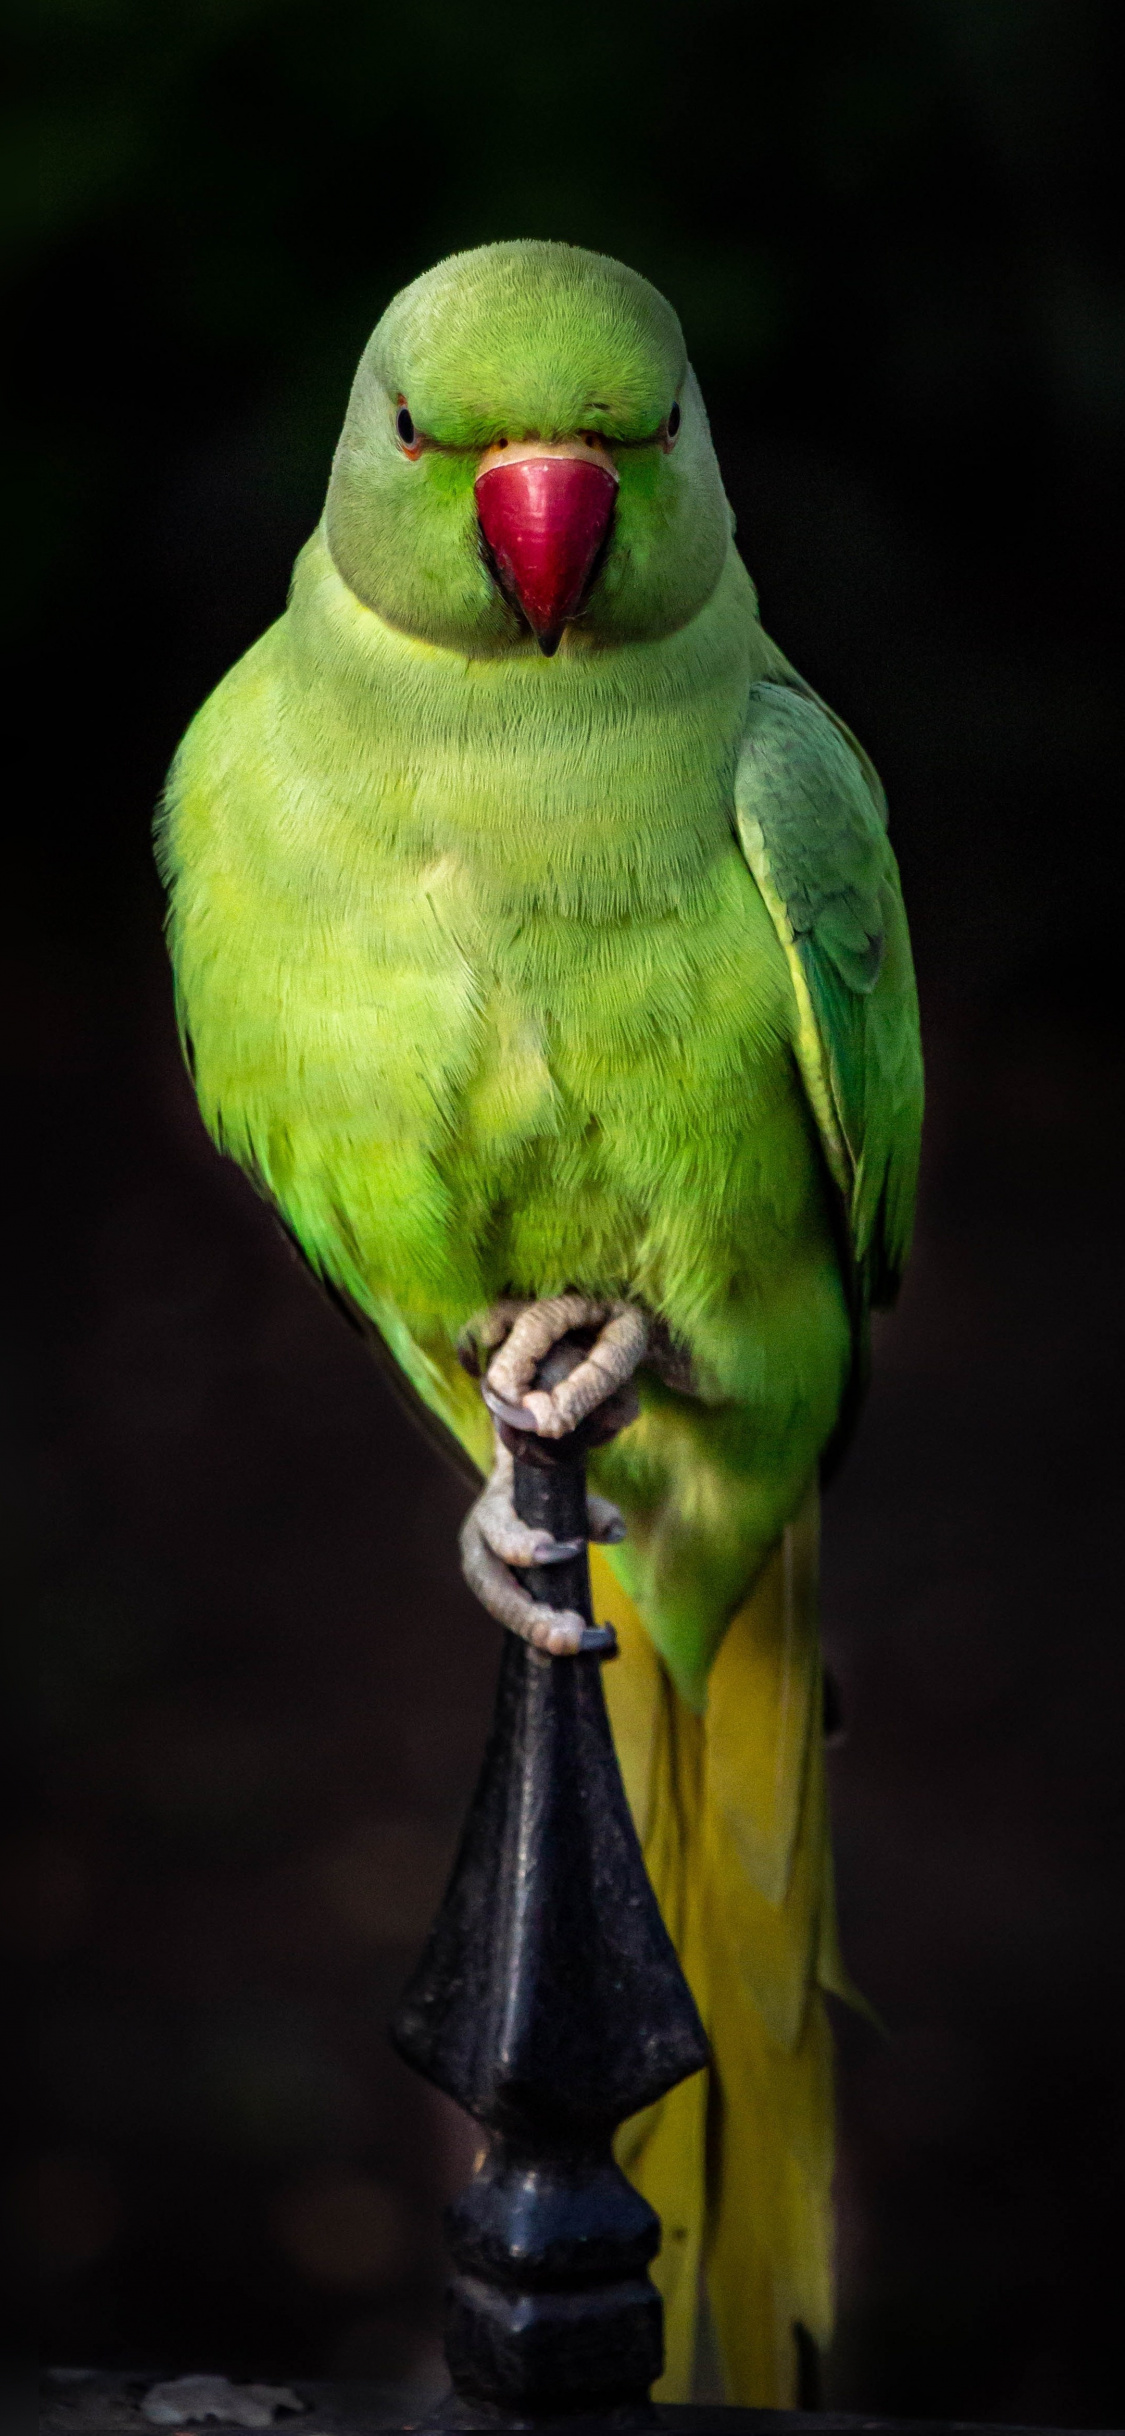 Parrot, Green, Bird, Sit, Portrait, Wallpaper - Iphone Parrot Wallpaper Hd  - 1125x2436 Wallpaper 